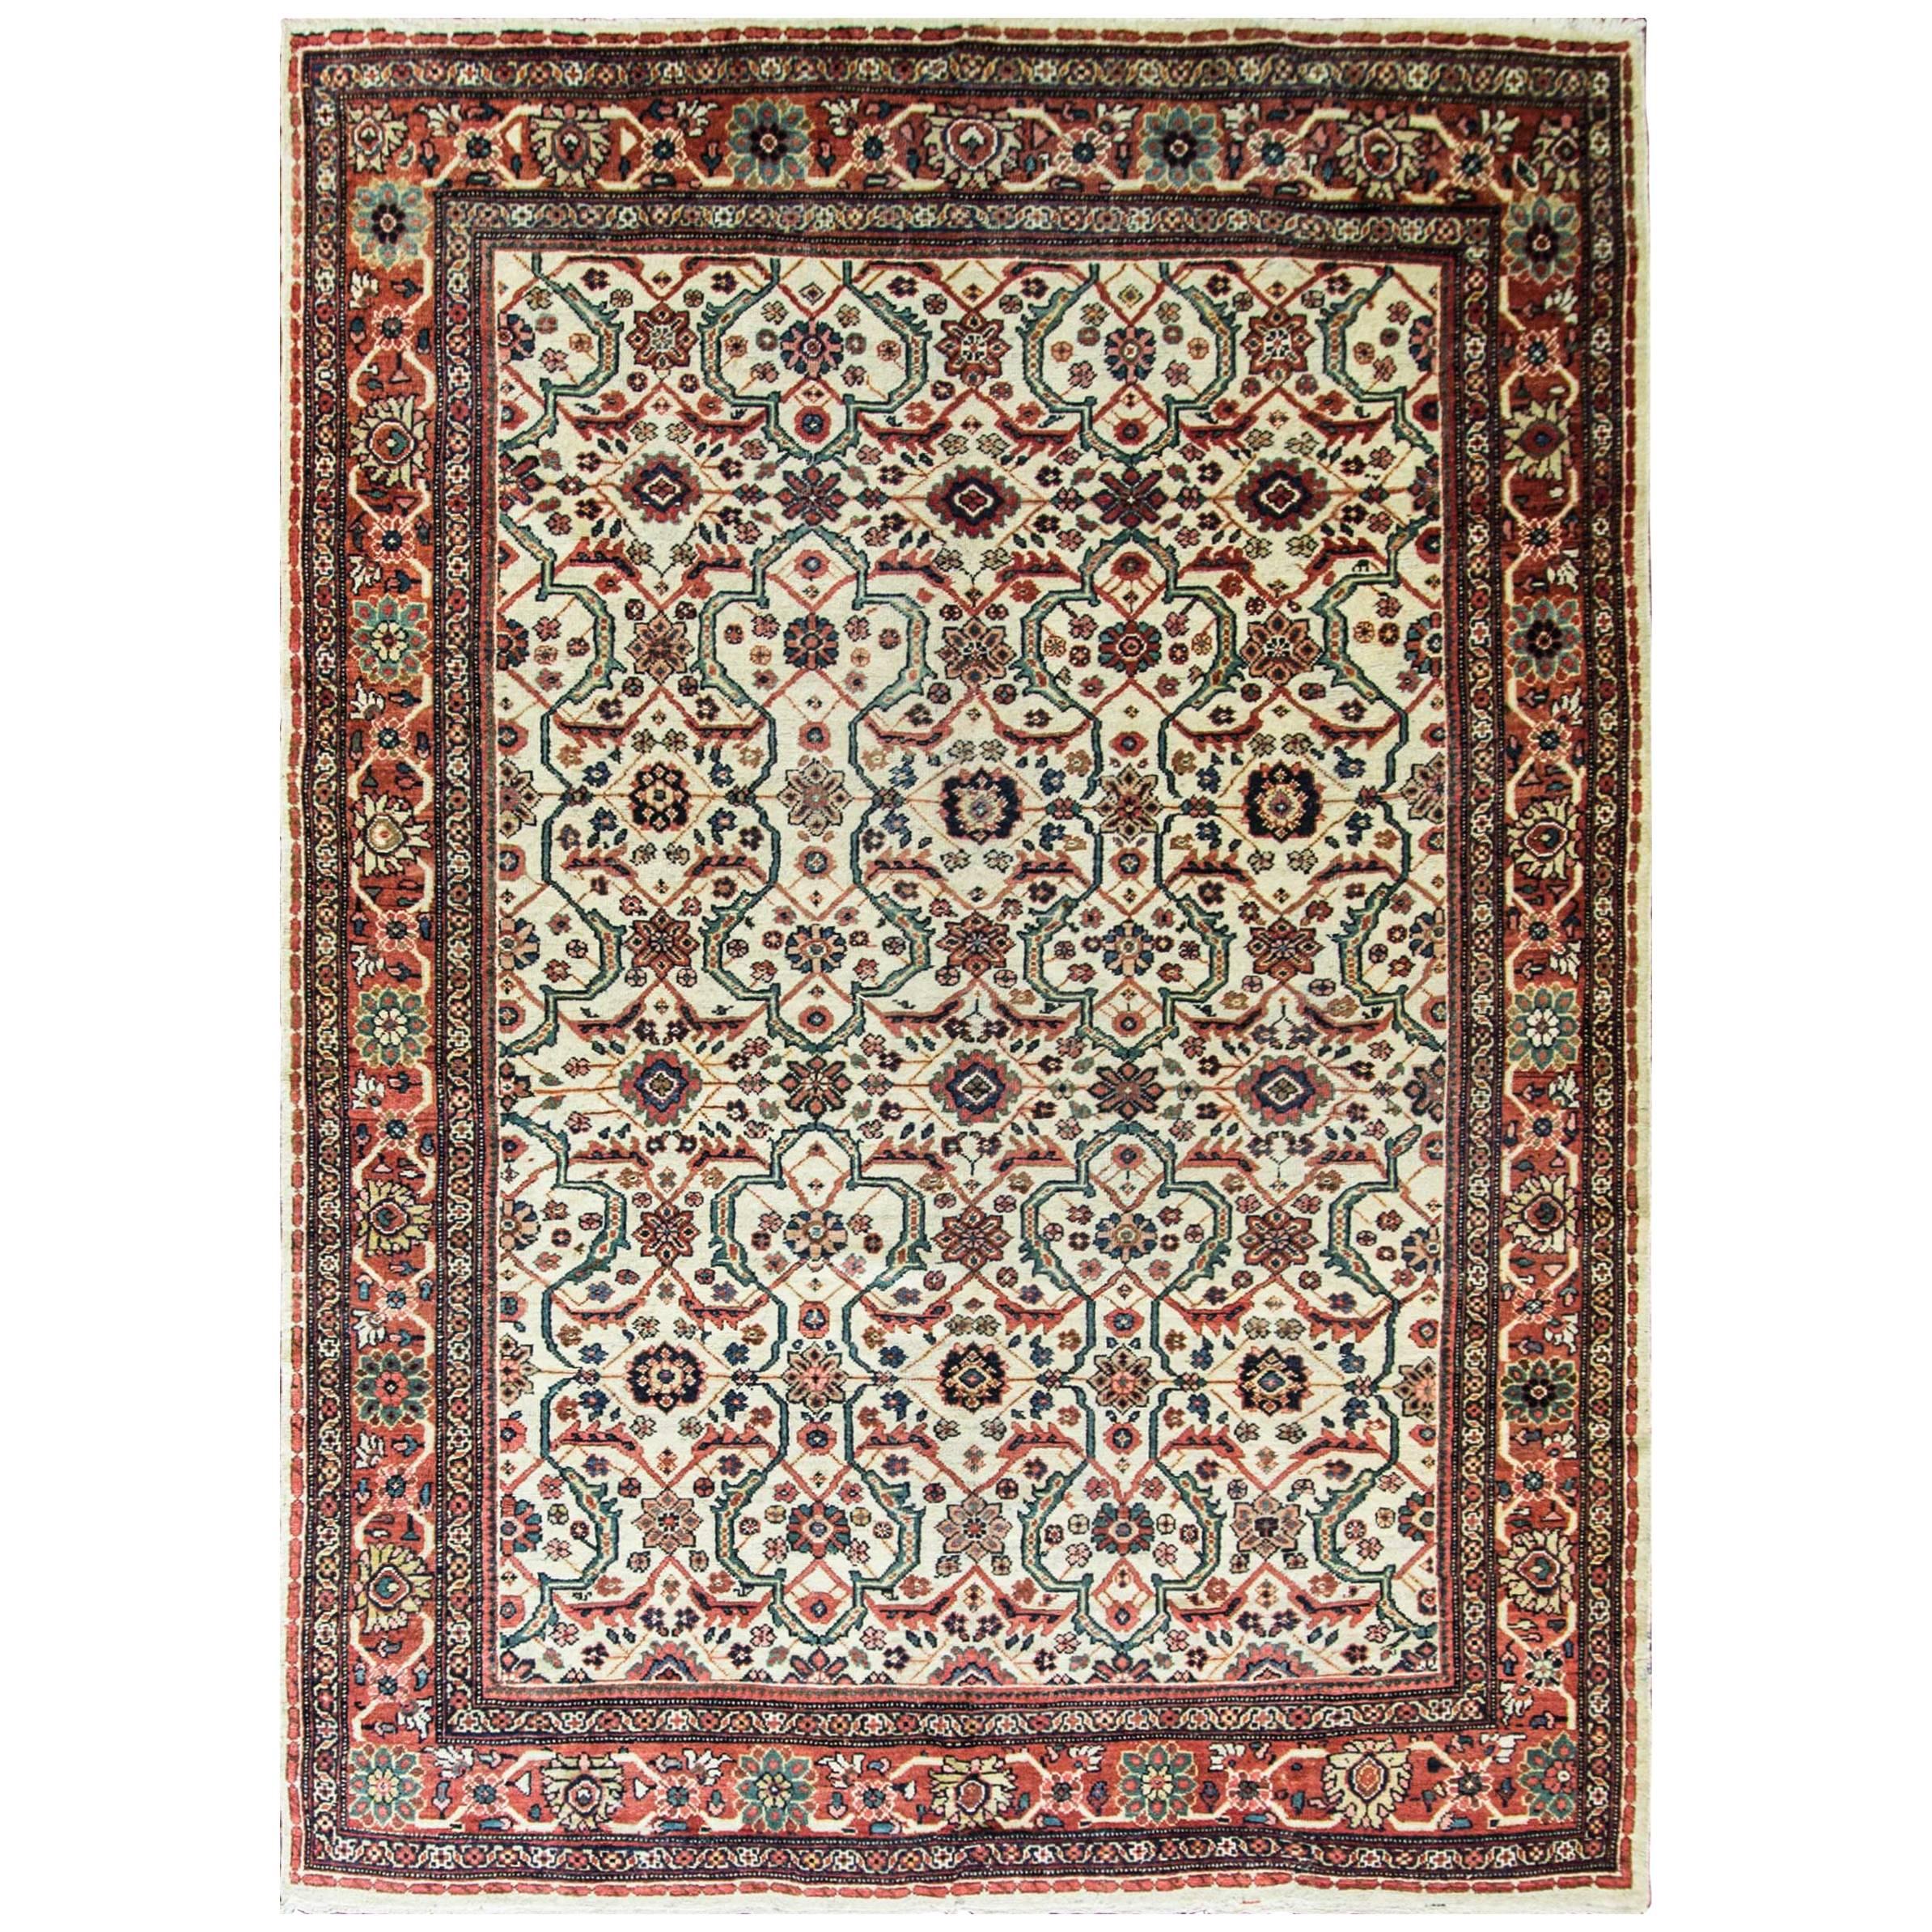  Antique Persian Sultanabad Carpet, 7' x 10'